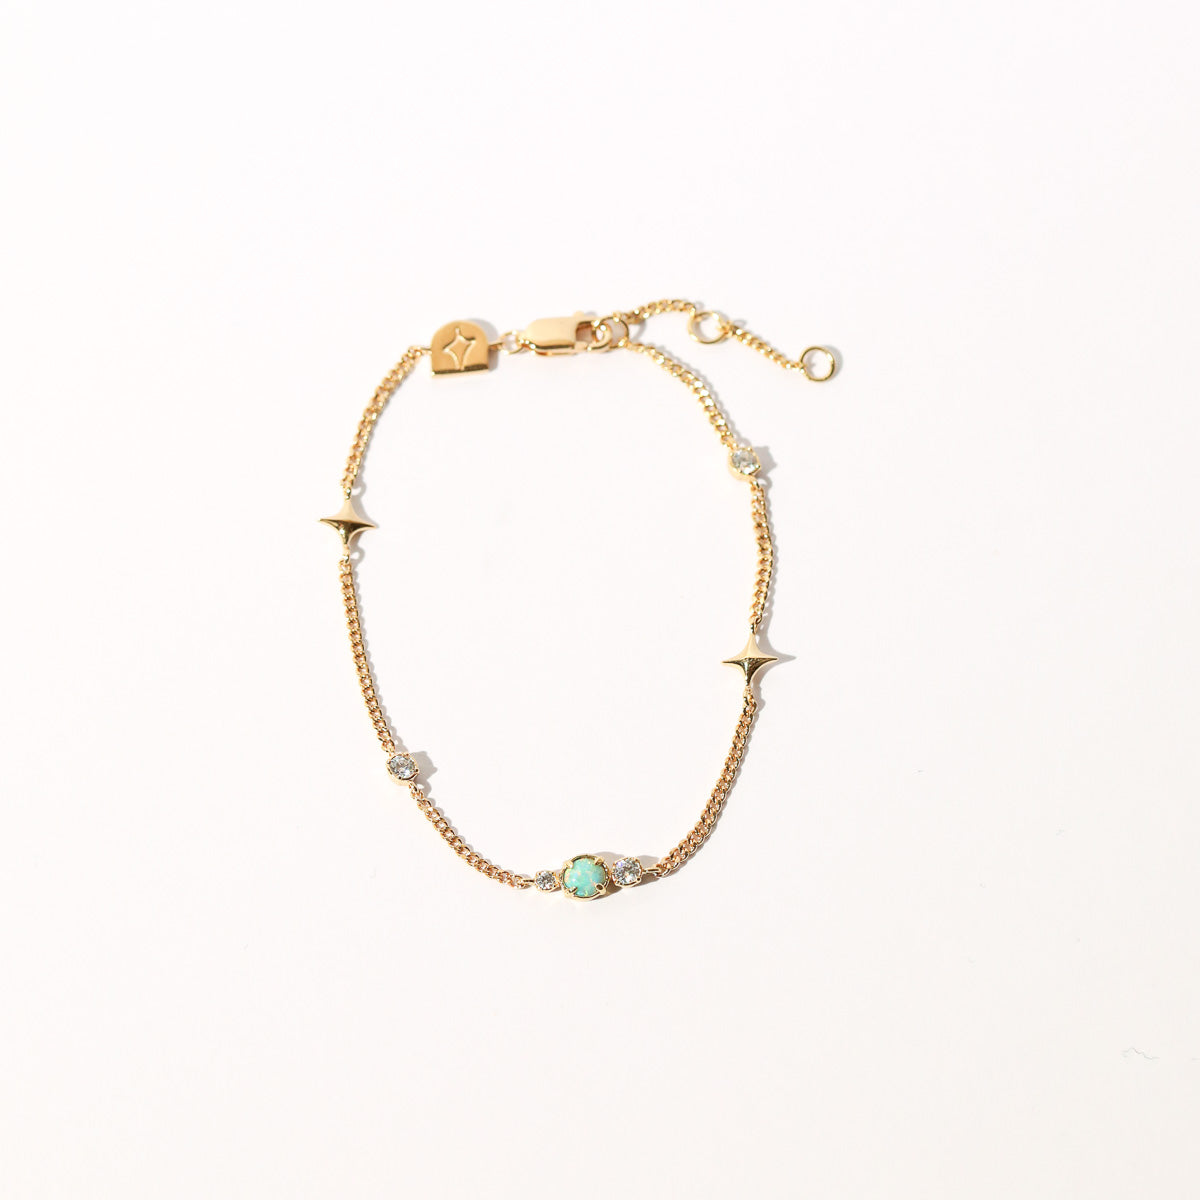 Cosmic Star Opal Bracelet in Gold flat lay shot